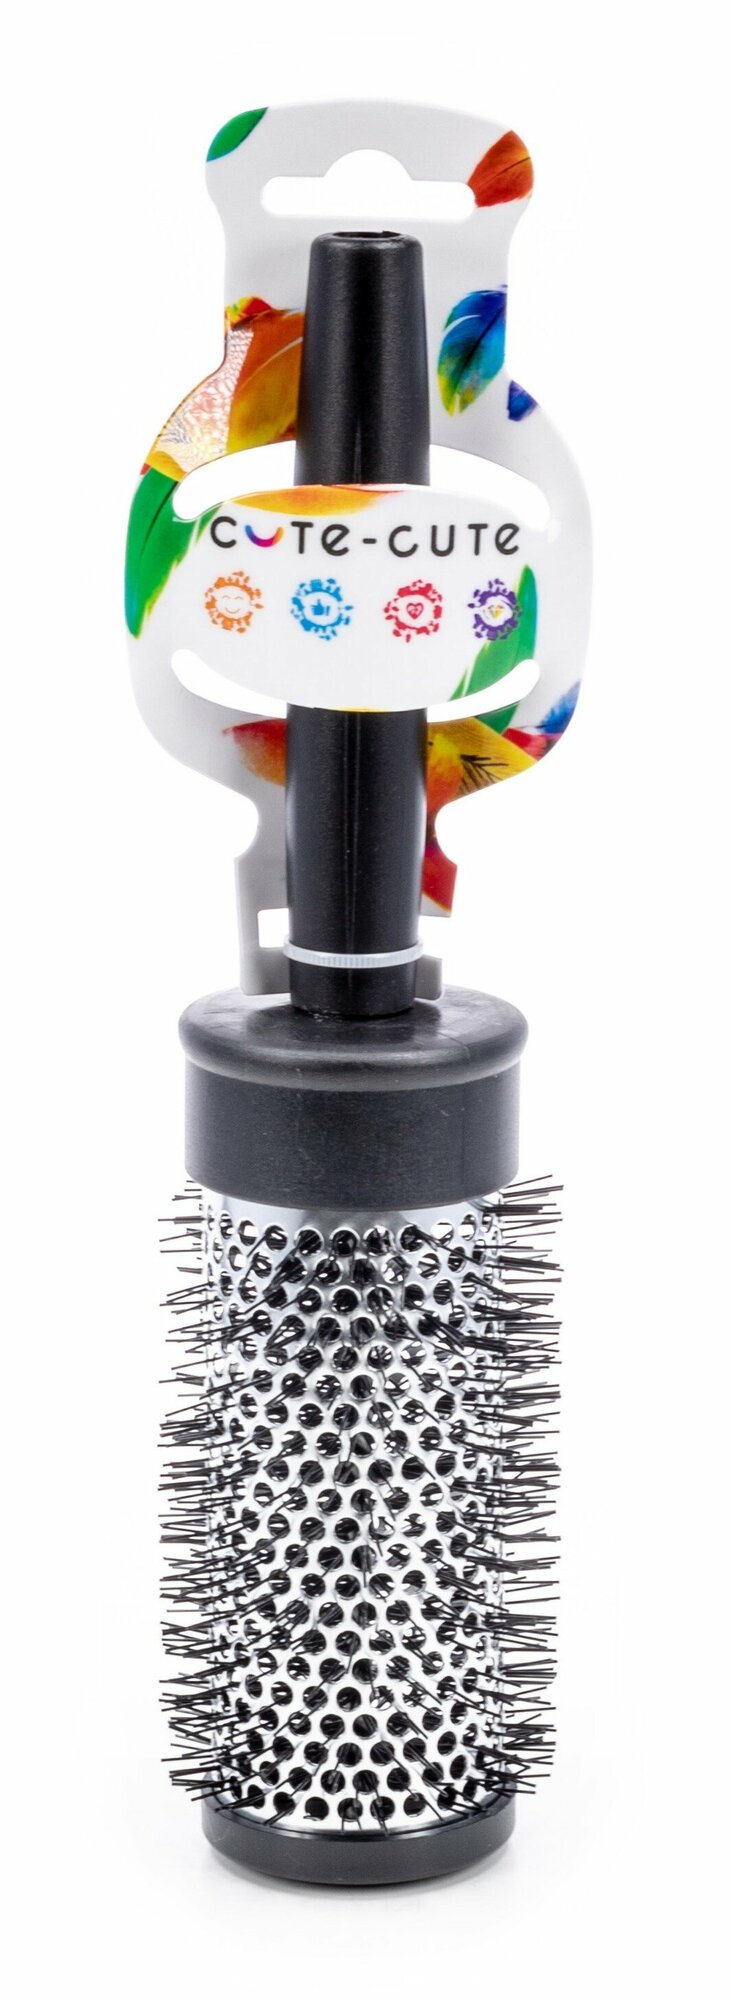 Брашинг расческа Cute-cute / Кьют-кьют для укладки волос термическая с пластиковой щетиной, диаметр 47мм, длина 245мм / стайлинг для объема